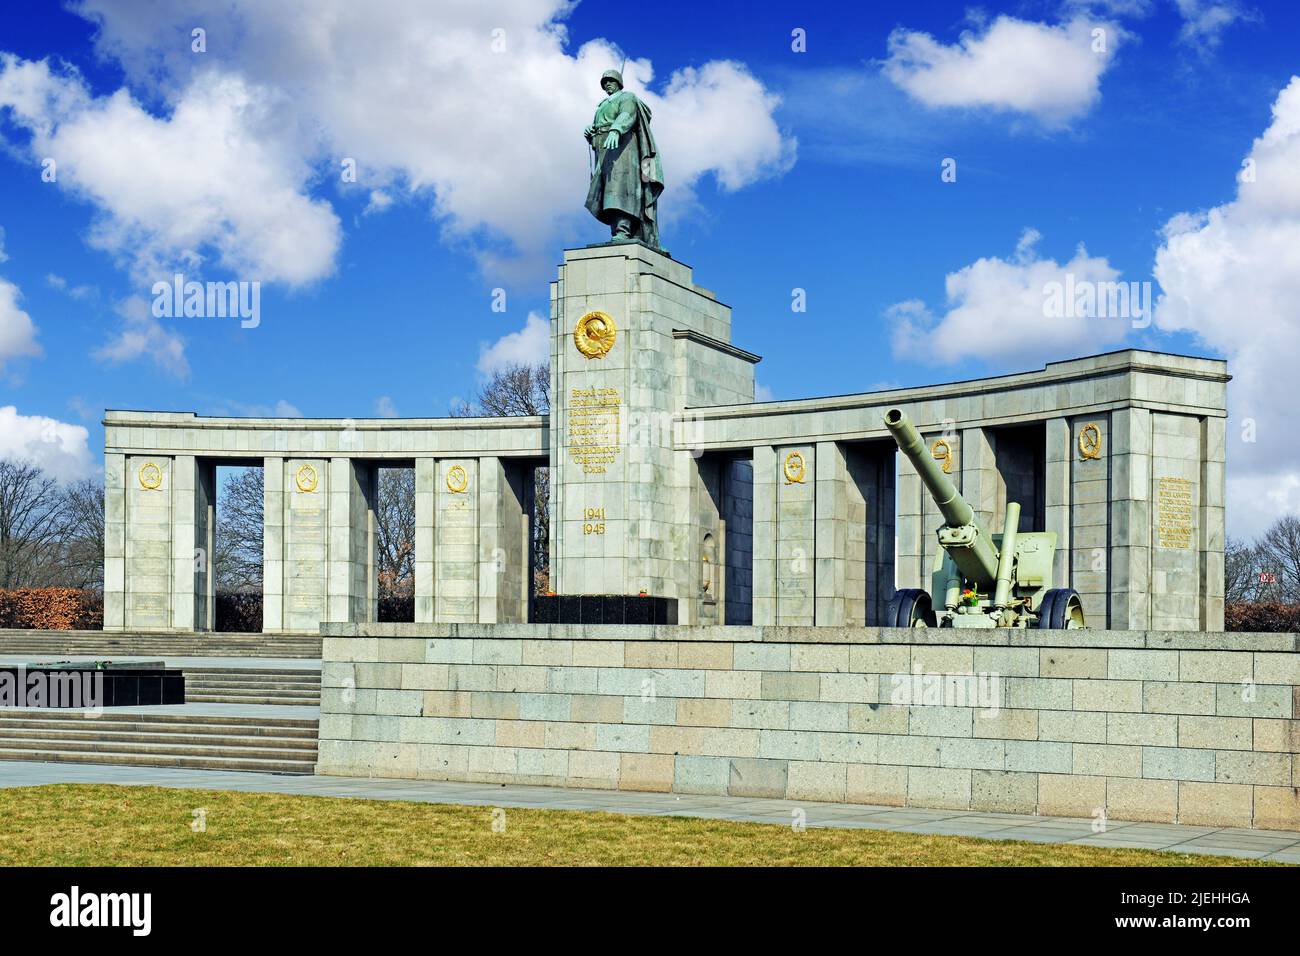 Sowjetische Ehrenmal für die gefallenen russischen, sowjetischen Soldaten des 2. Welkrieges, Strasse des 17. Juni, Berlino, Germania, Europa Foto Stock